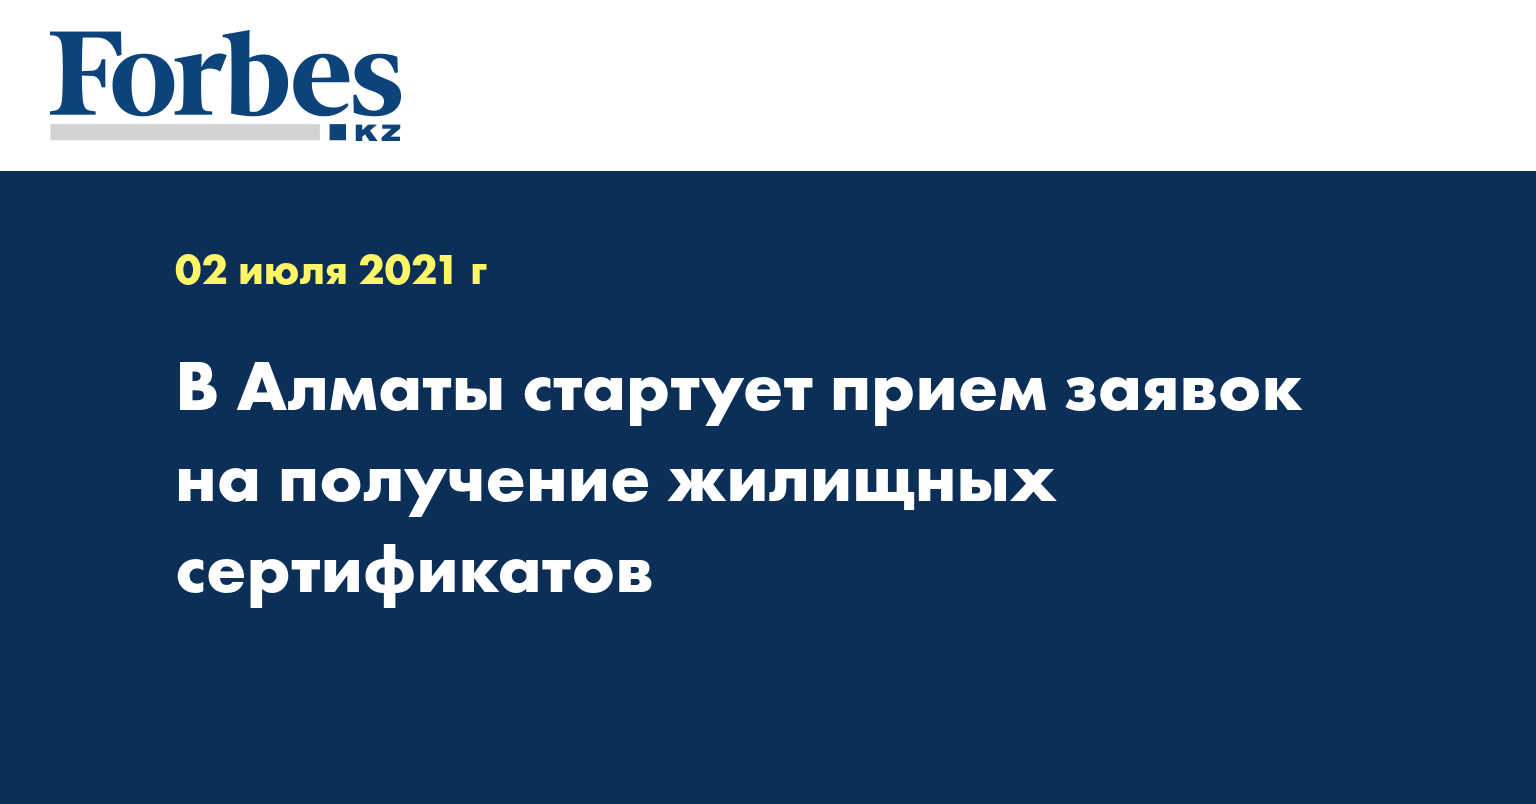 В Алматы стартует прием заявок на получение жилищных сертификатов